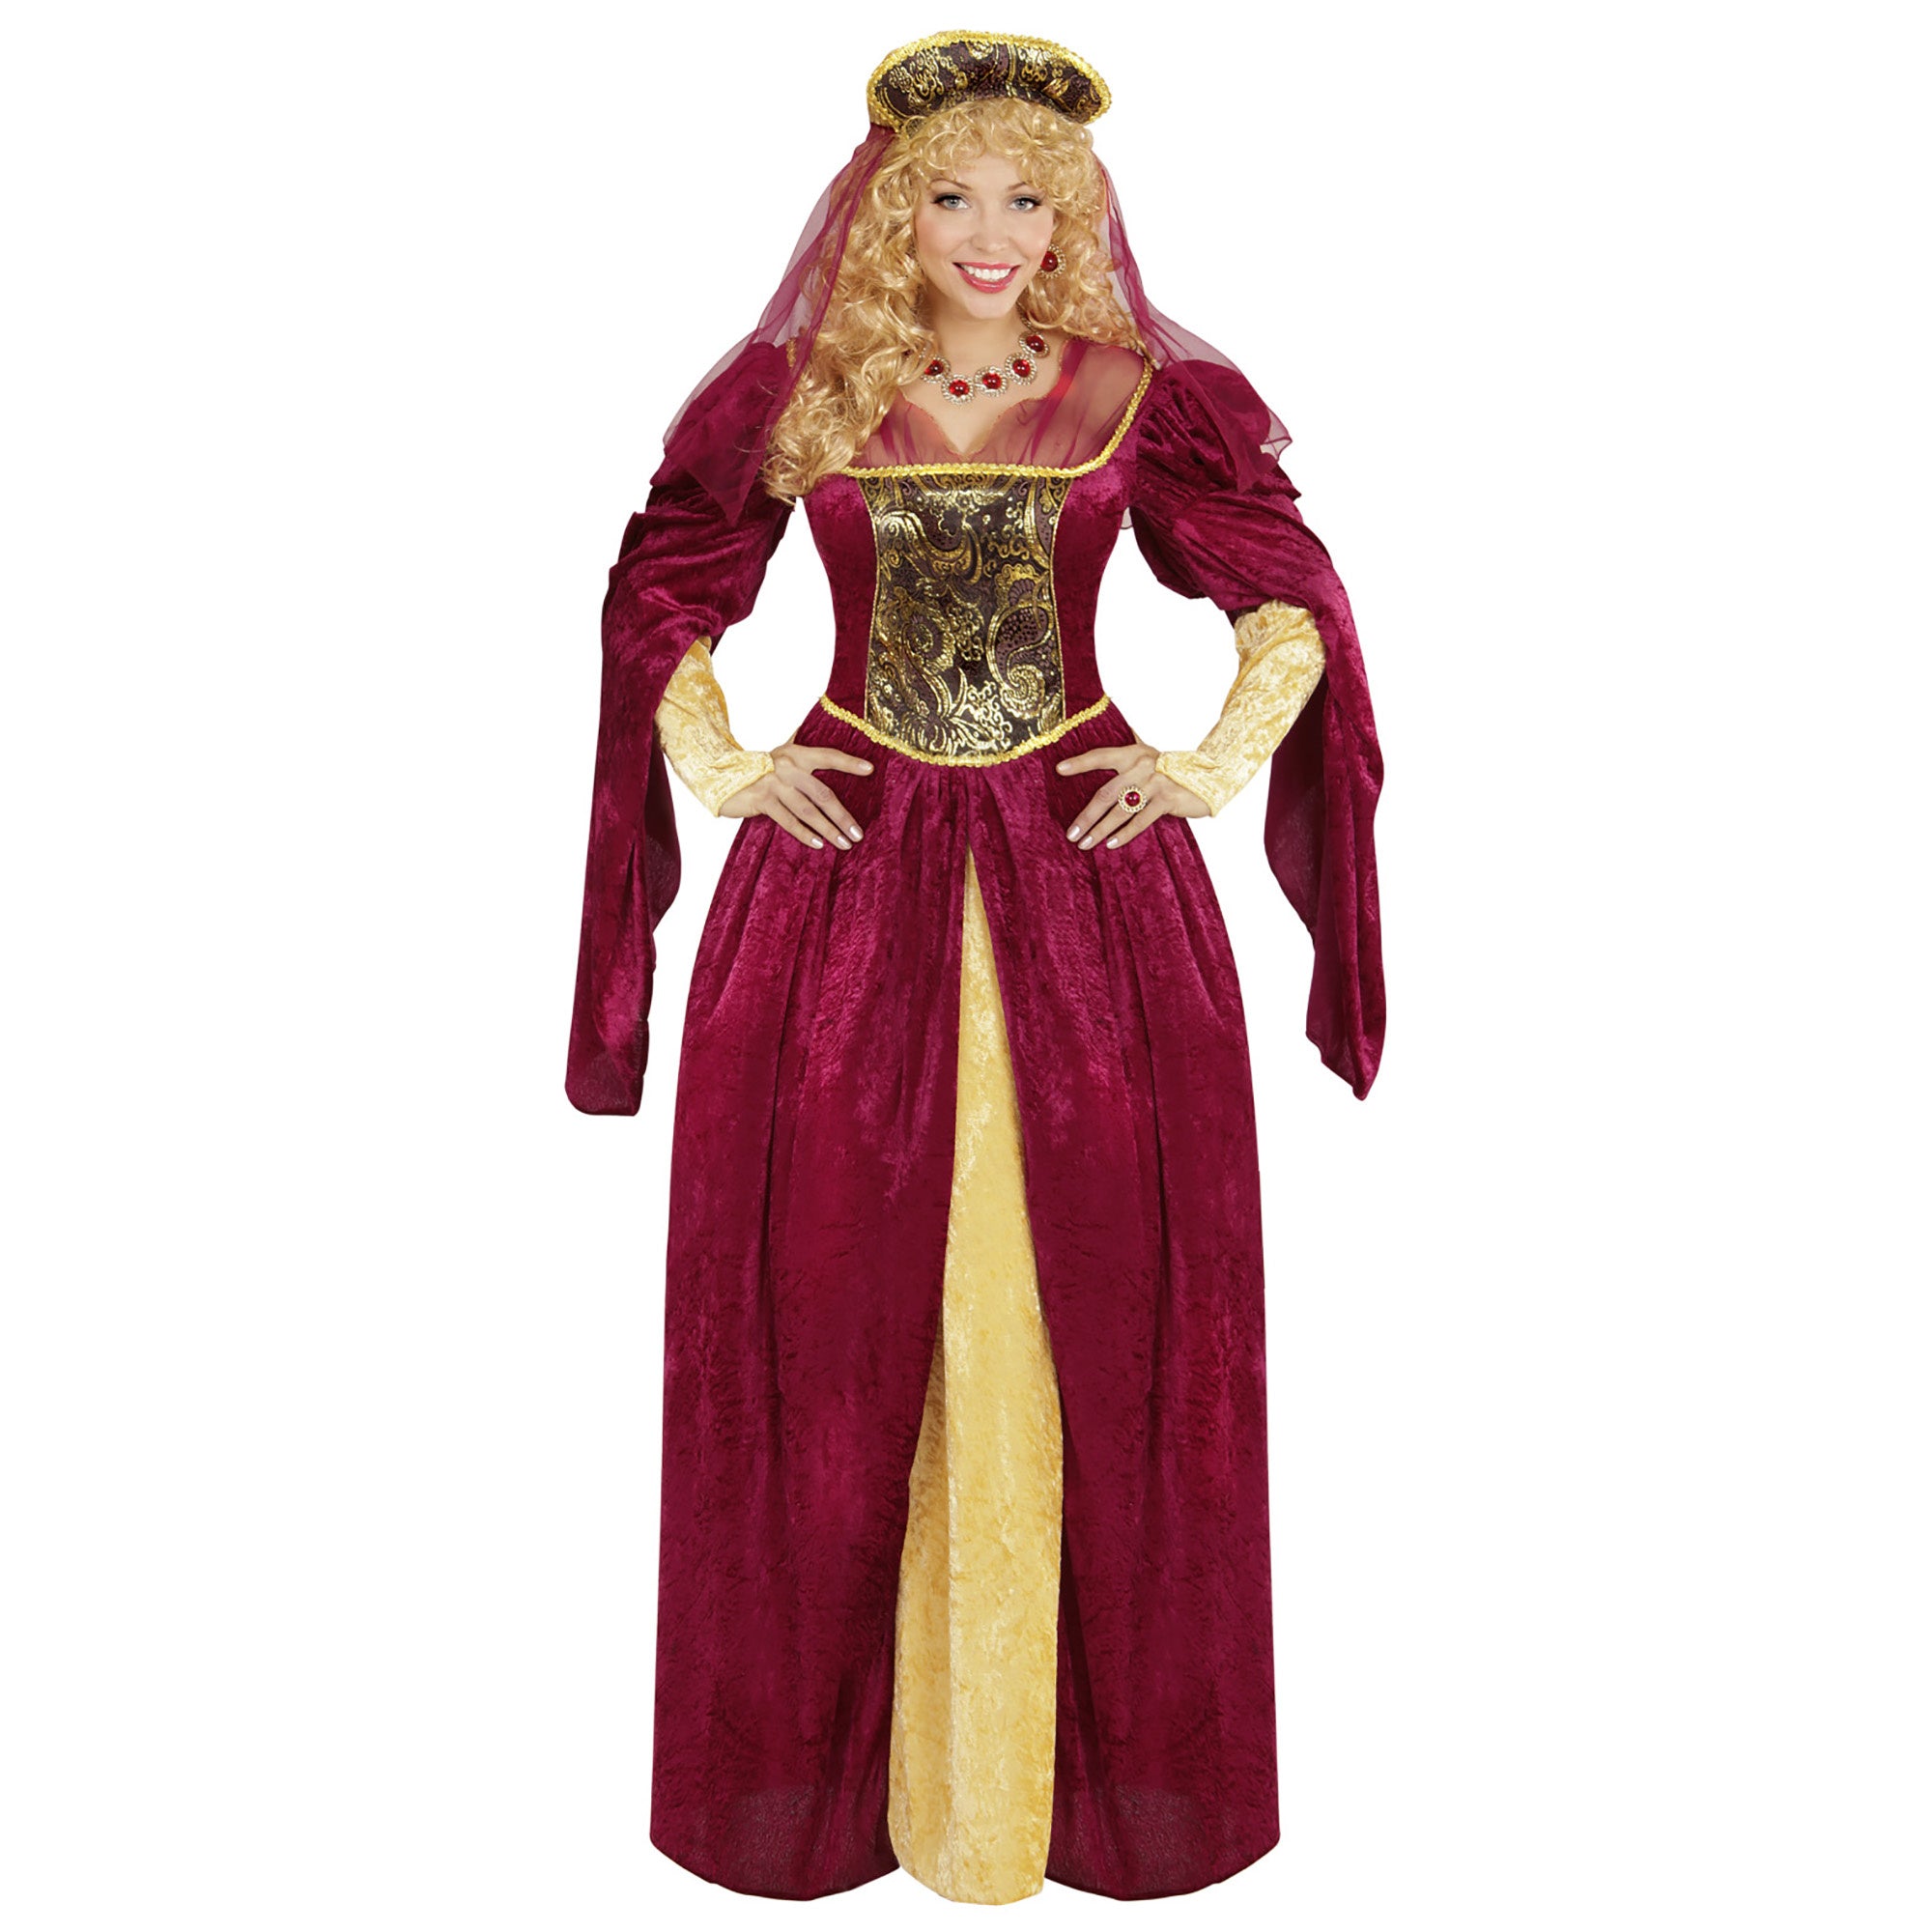 Widmann - Middeleeuwen & Renaissance Kostuum - Edele Koningin Eleonora - Vrouw - rood - XL - Carnavalskleding - Verkleedkleding